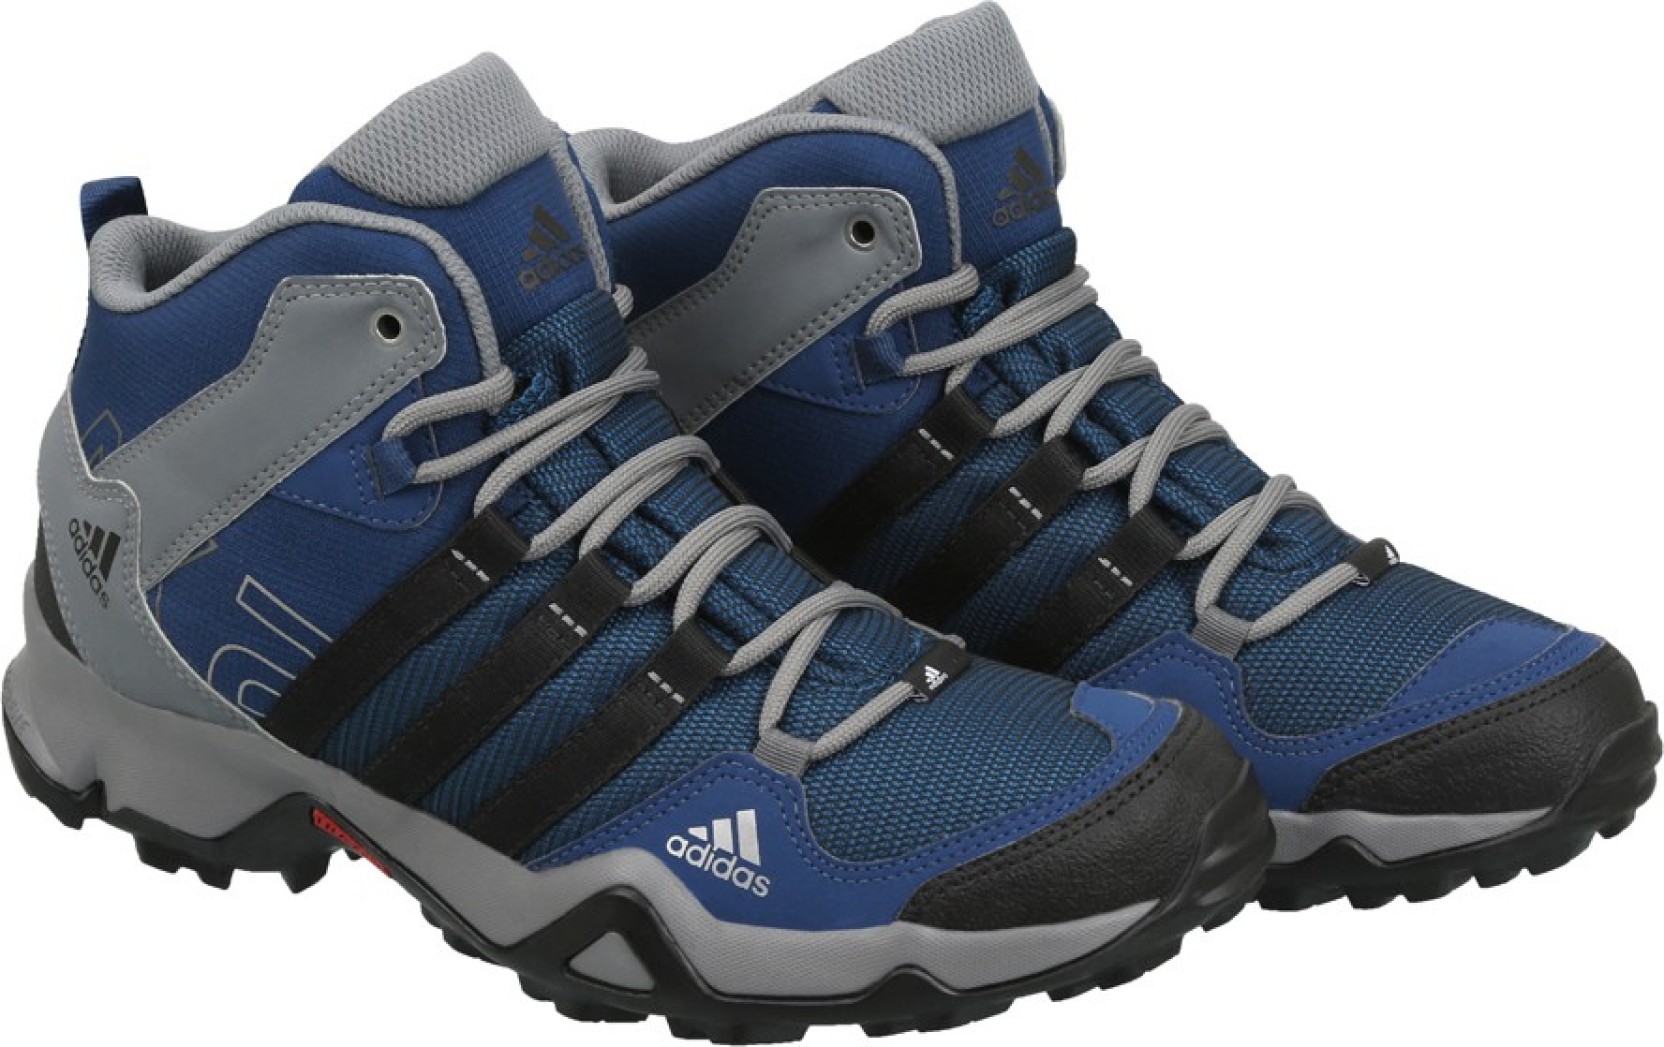 Adidas AX2 MID Outdoor Shoes - Buy MYSBLU/CBLACK/TECSTE/MYSB Color ...